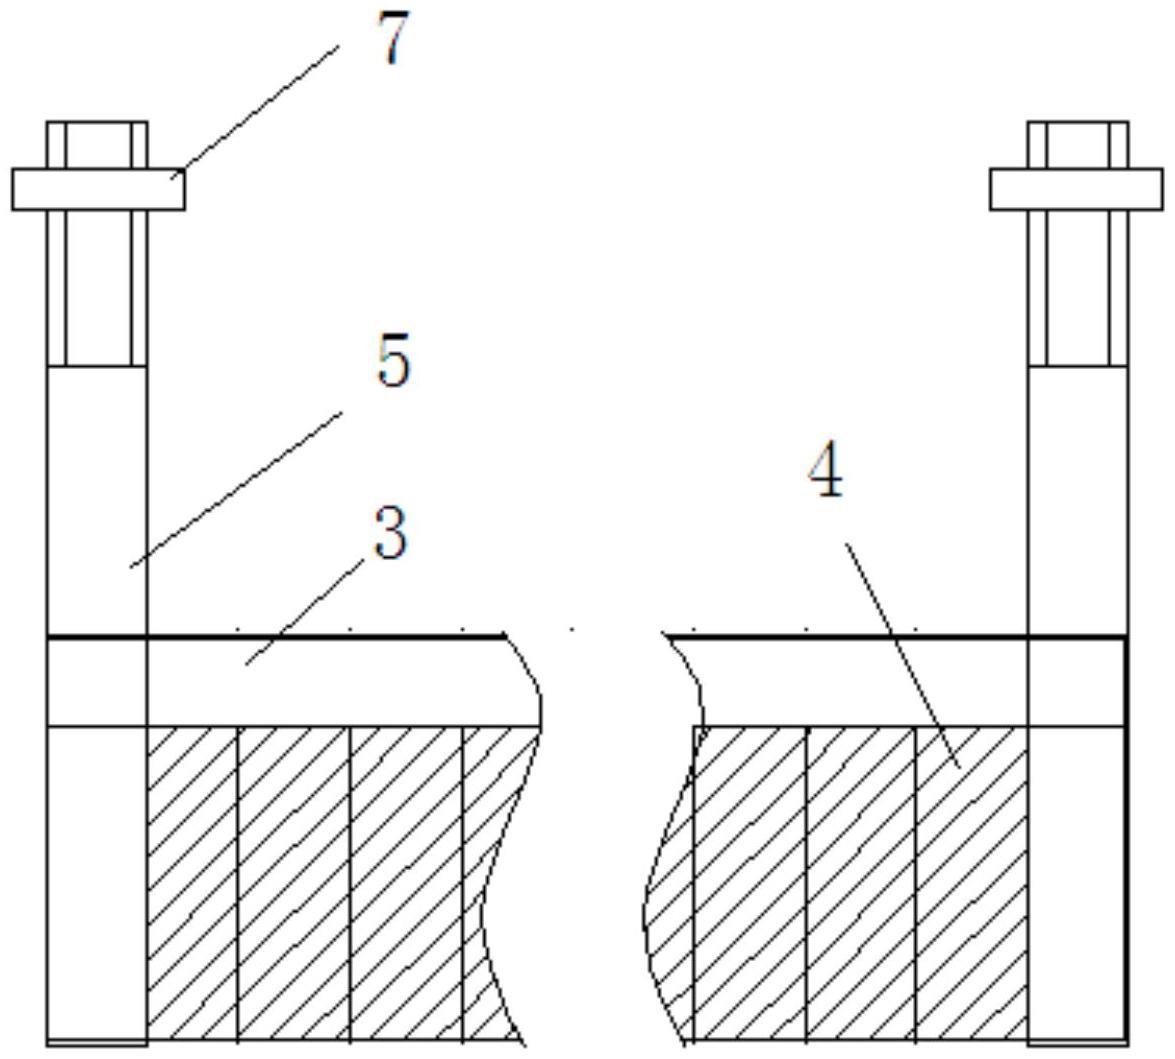 溢流堰设置有动态调节装置的动筛跳汰机的制作方法